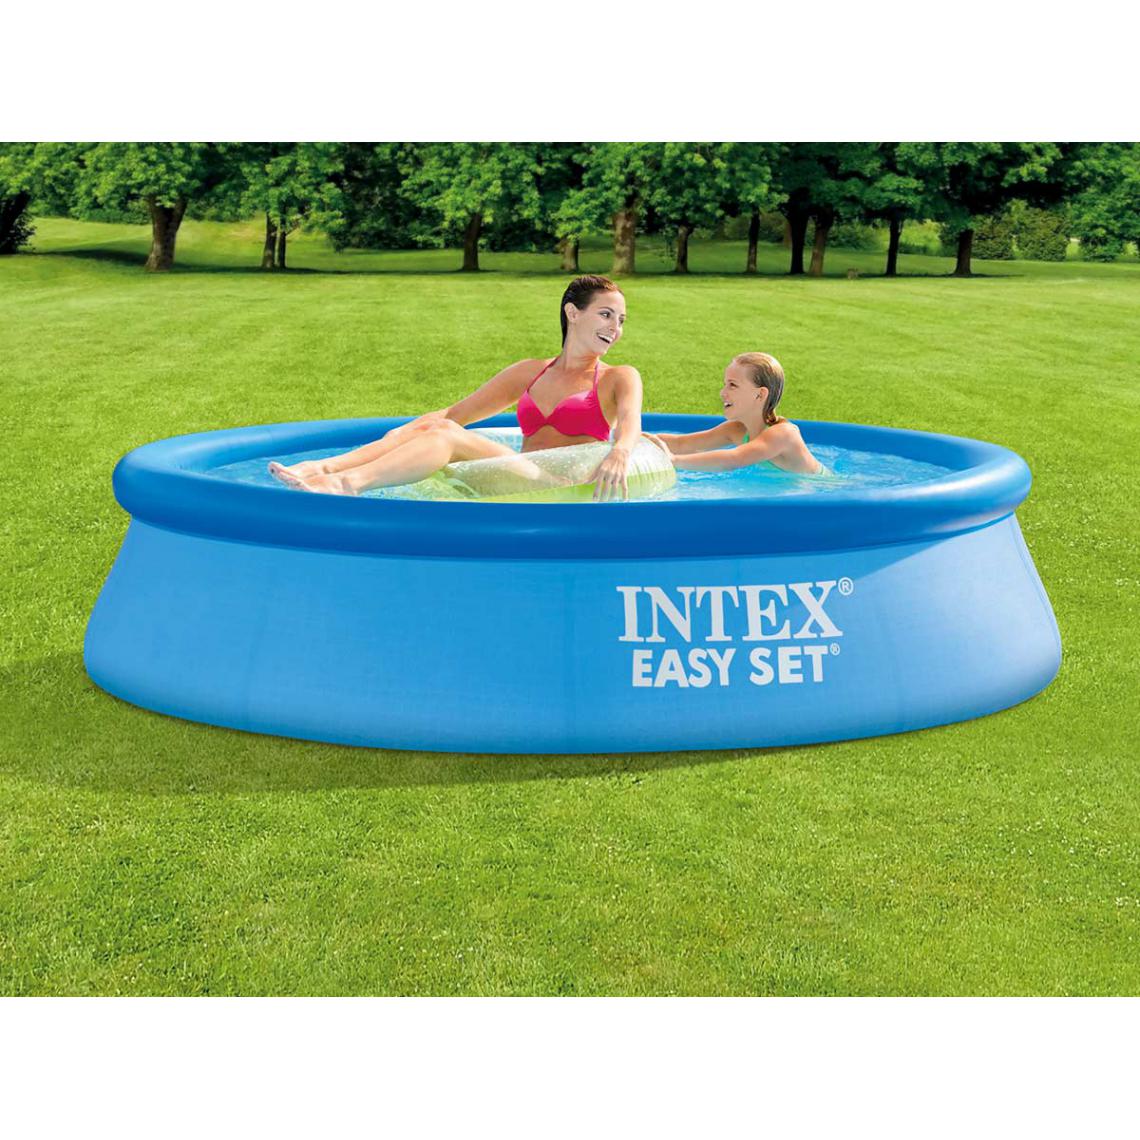 Intex - Intex Piscine gonfable 244 x 61cm bassin familiale pour enfants jardin terrasse - Piscines autoportantes